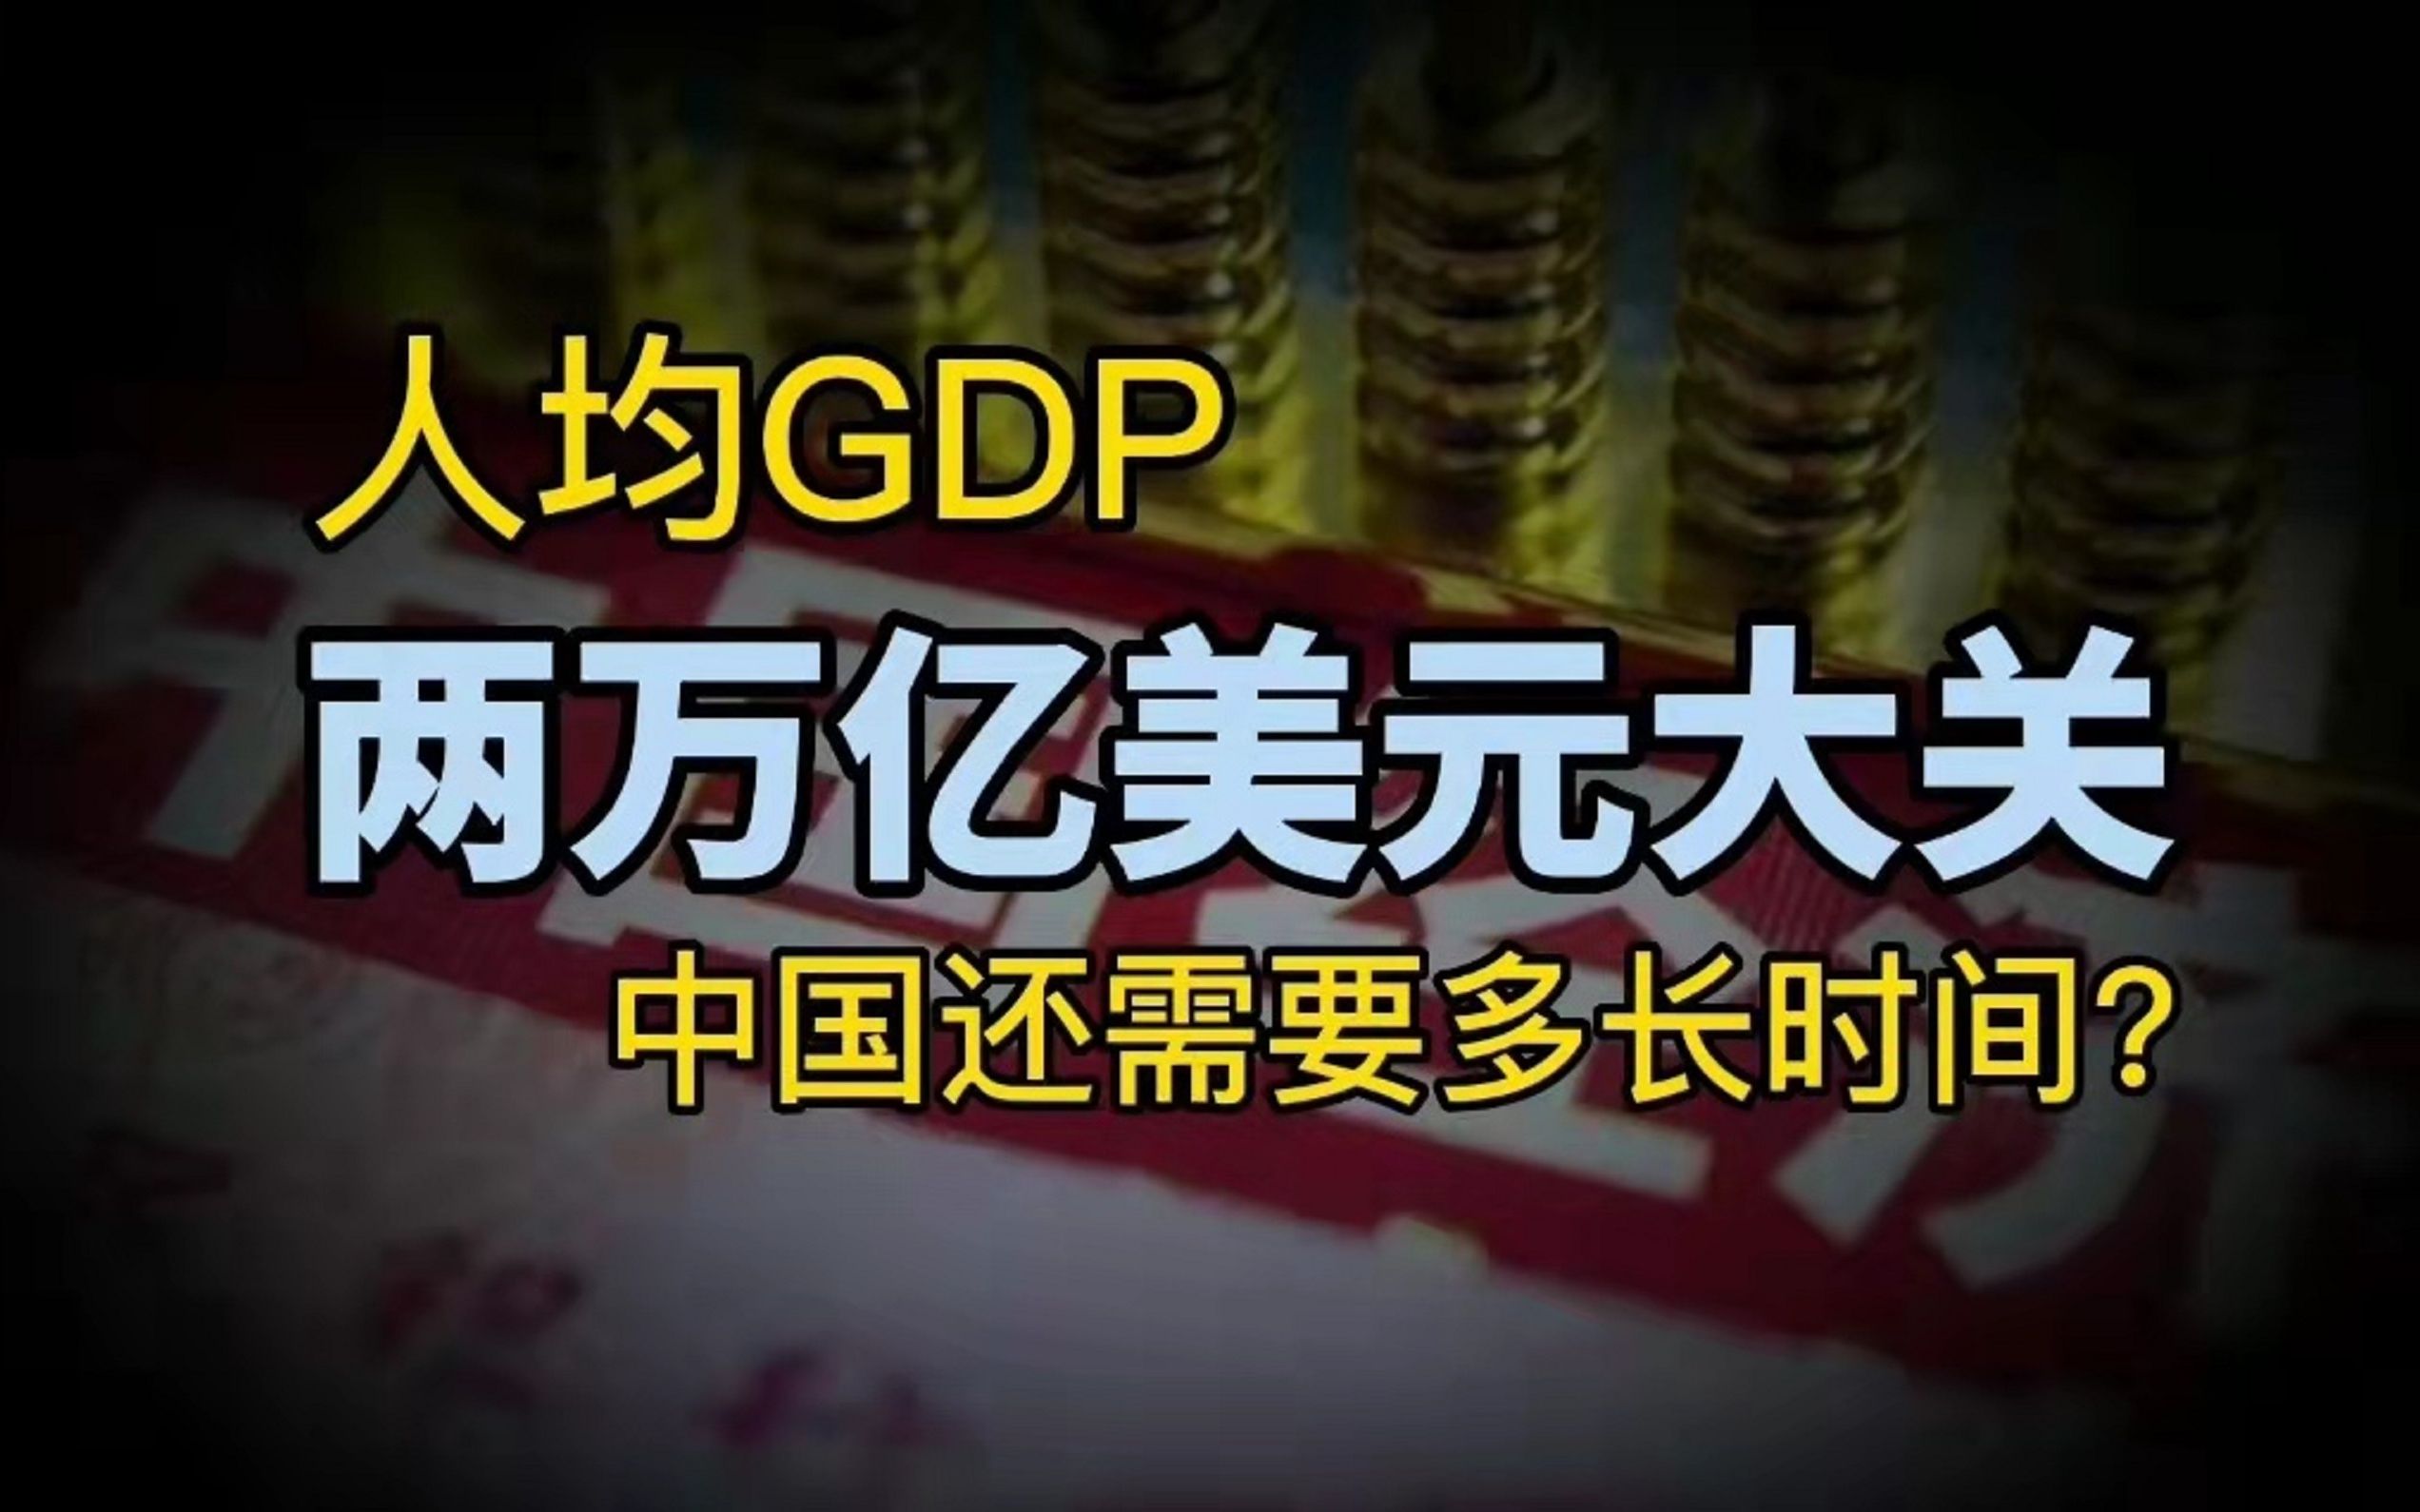 中国人均GDP增长图片